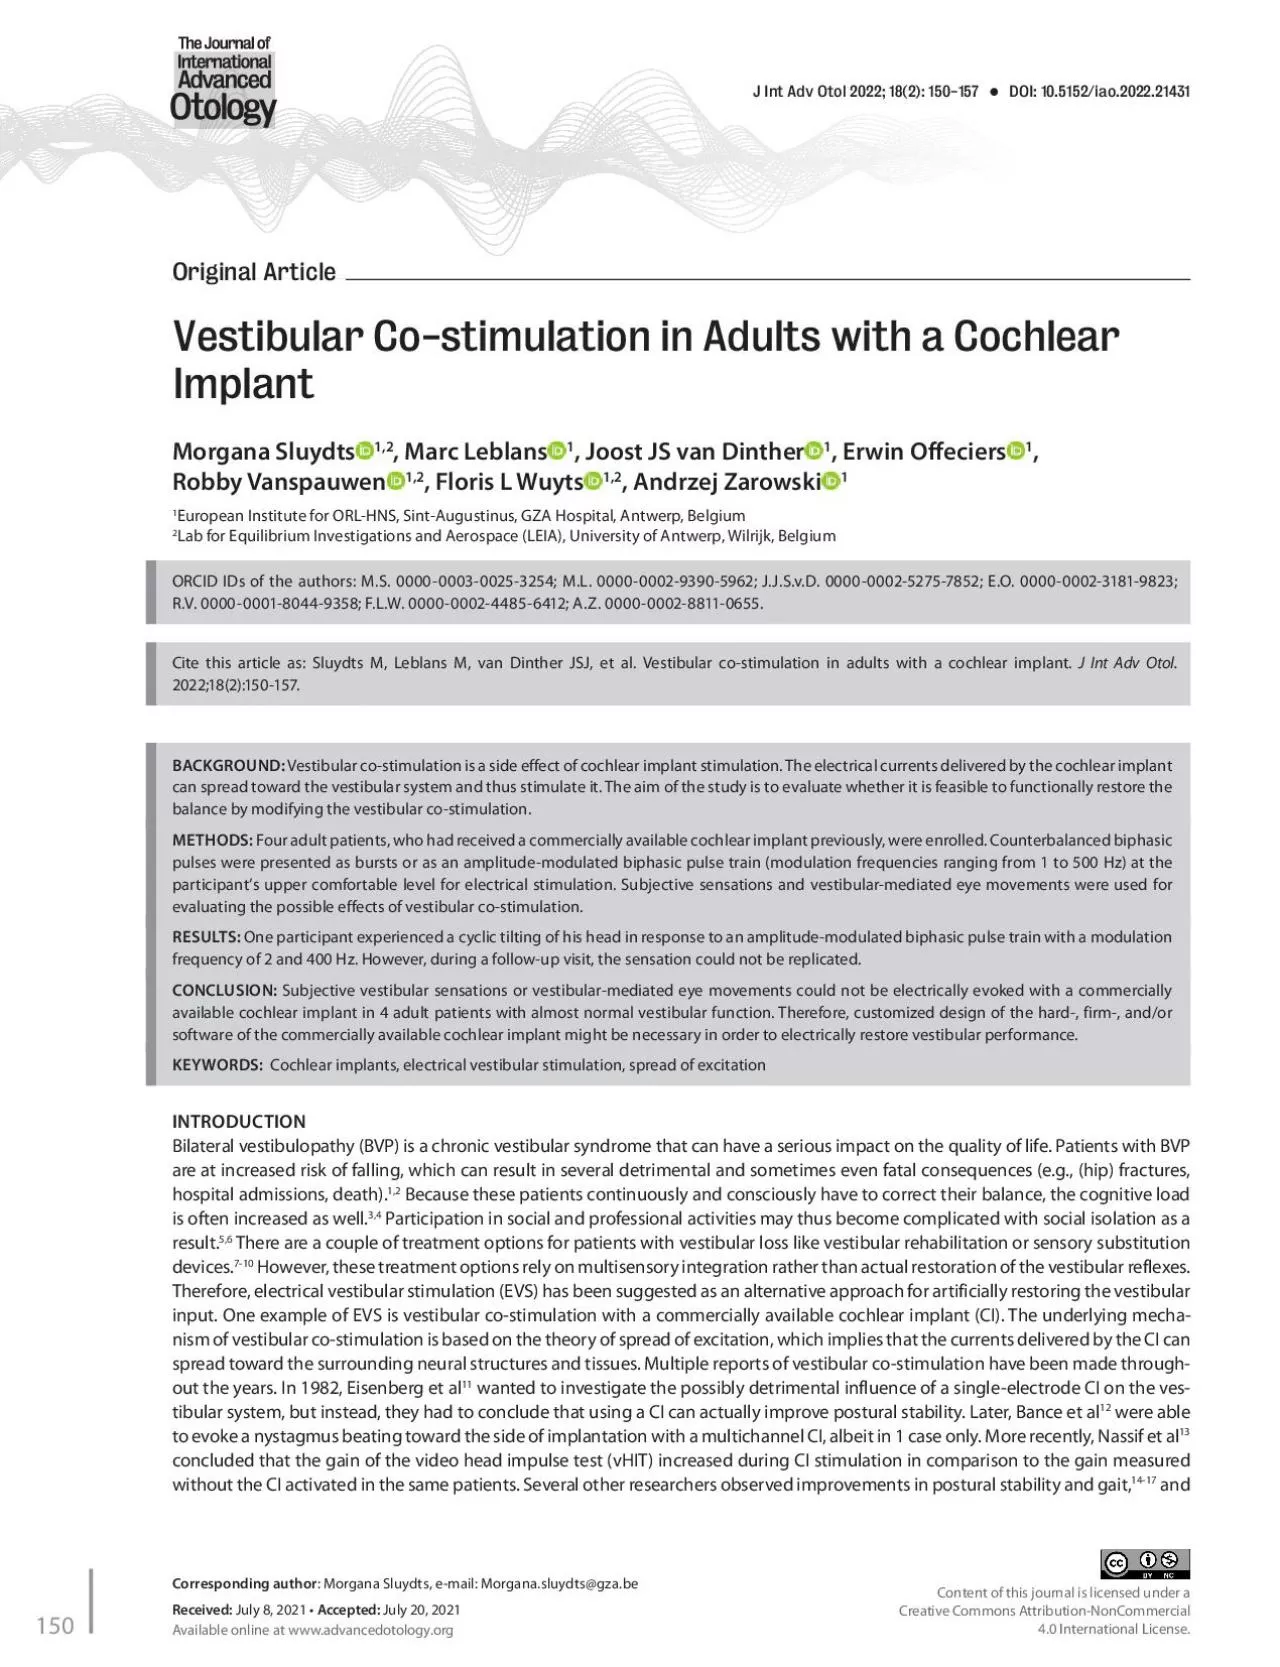 Vestibular Costimulation in Adults with a Cochlear ImplantMorgana Slu